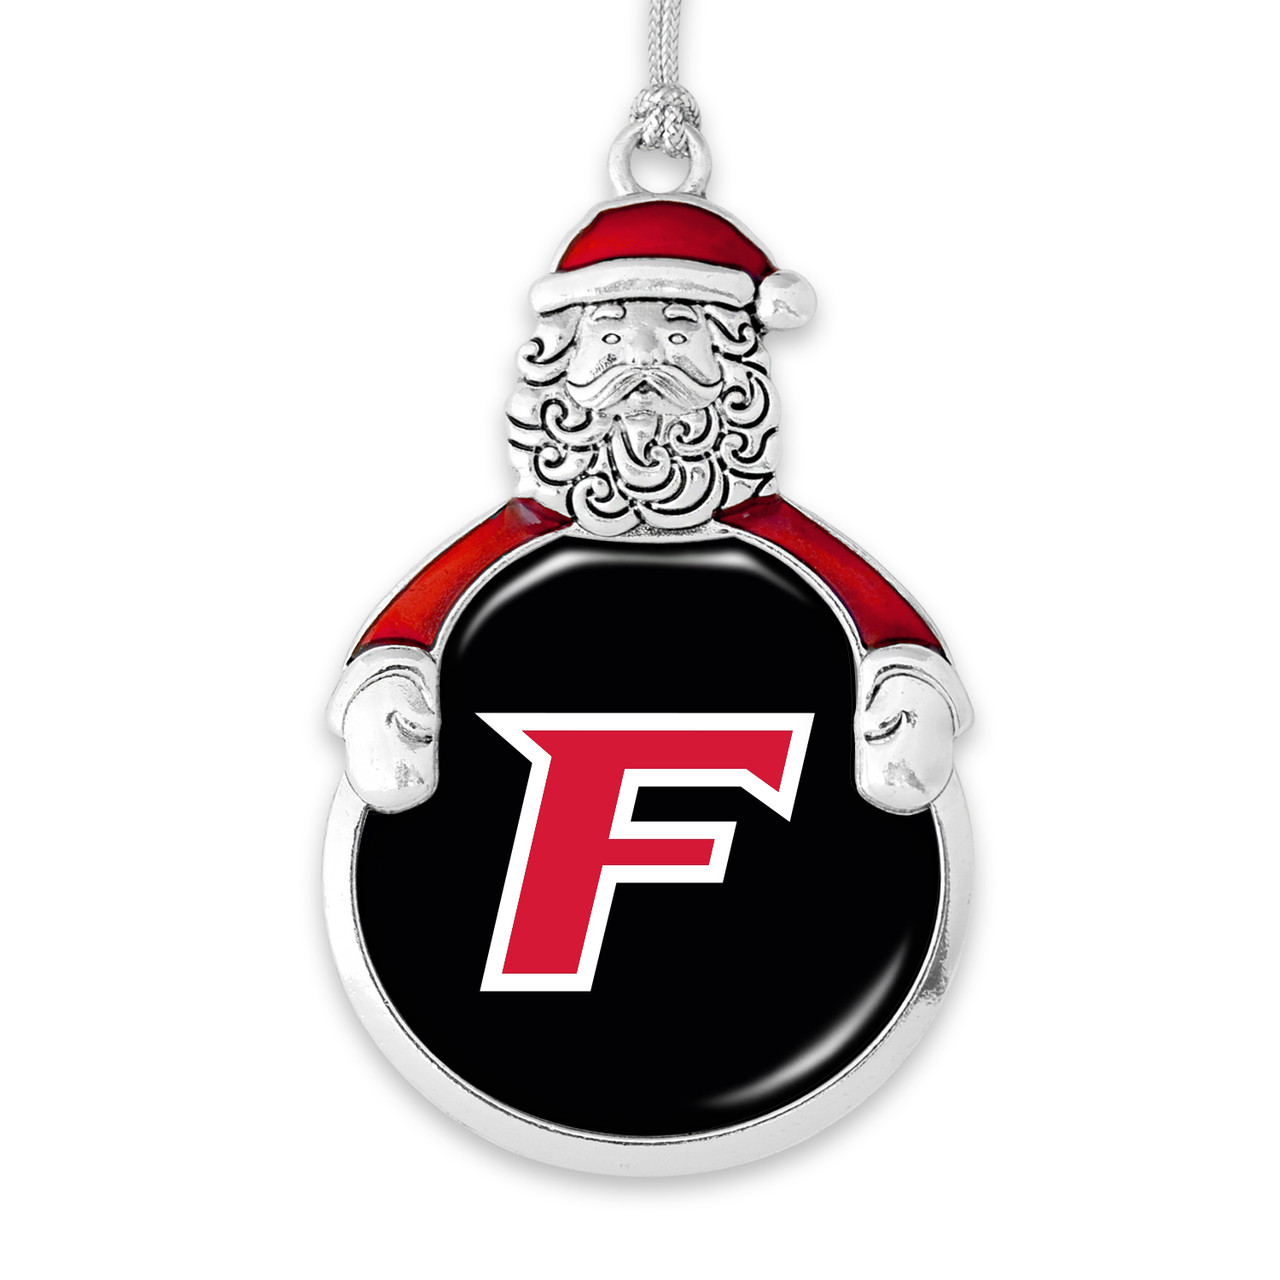 Fairfield Stags Christmas Ornament- Santa with Team Logo